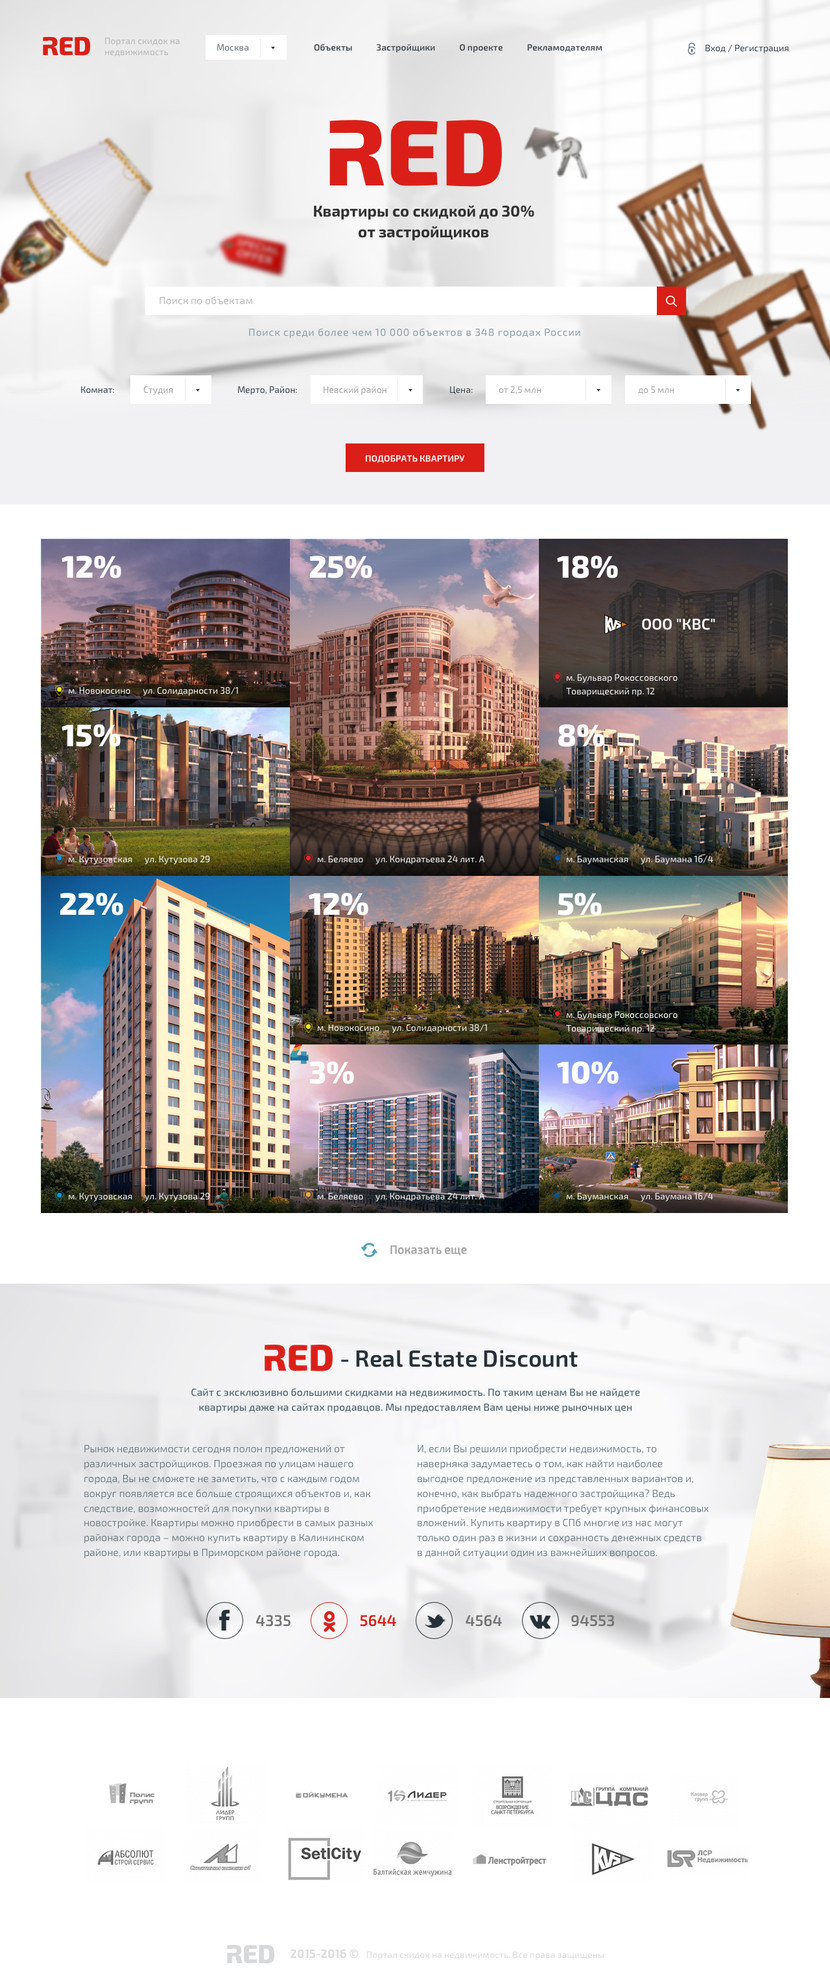 RED - Расшифровка "Real Estate Discount" - что в переводе  с англ "скидка на недвижимость". Также Red переводится с англ как красный, что также символично со скидками и акциями. Поэтому как акцентирующий цвет сайта был выбран красным. По желанию логотип и цвета можно поменять. - Сайт скидок на недвижимость